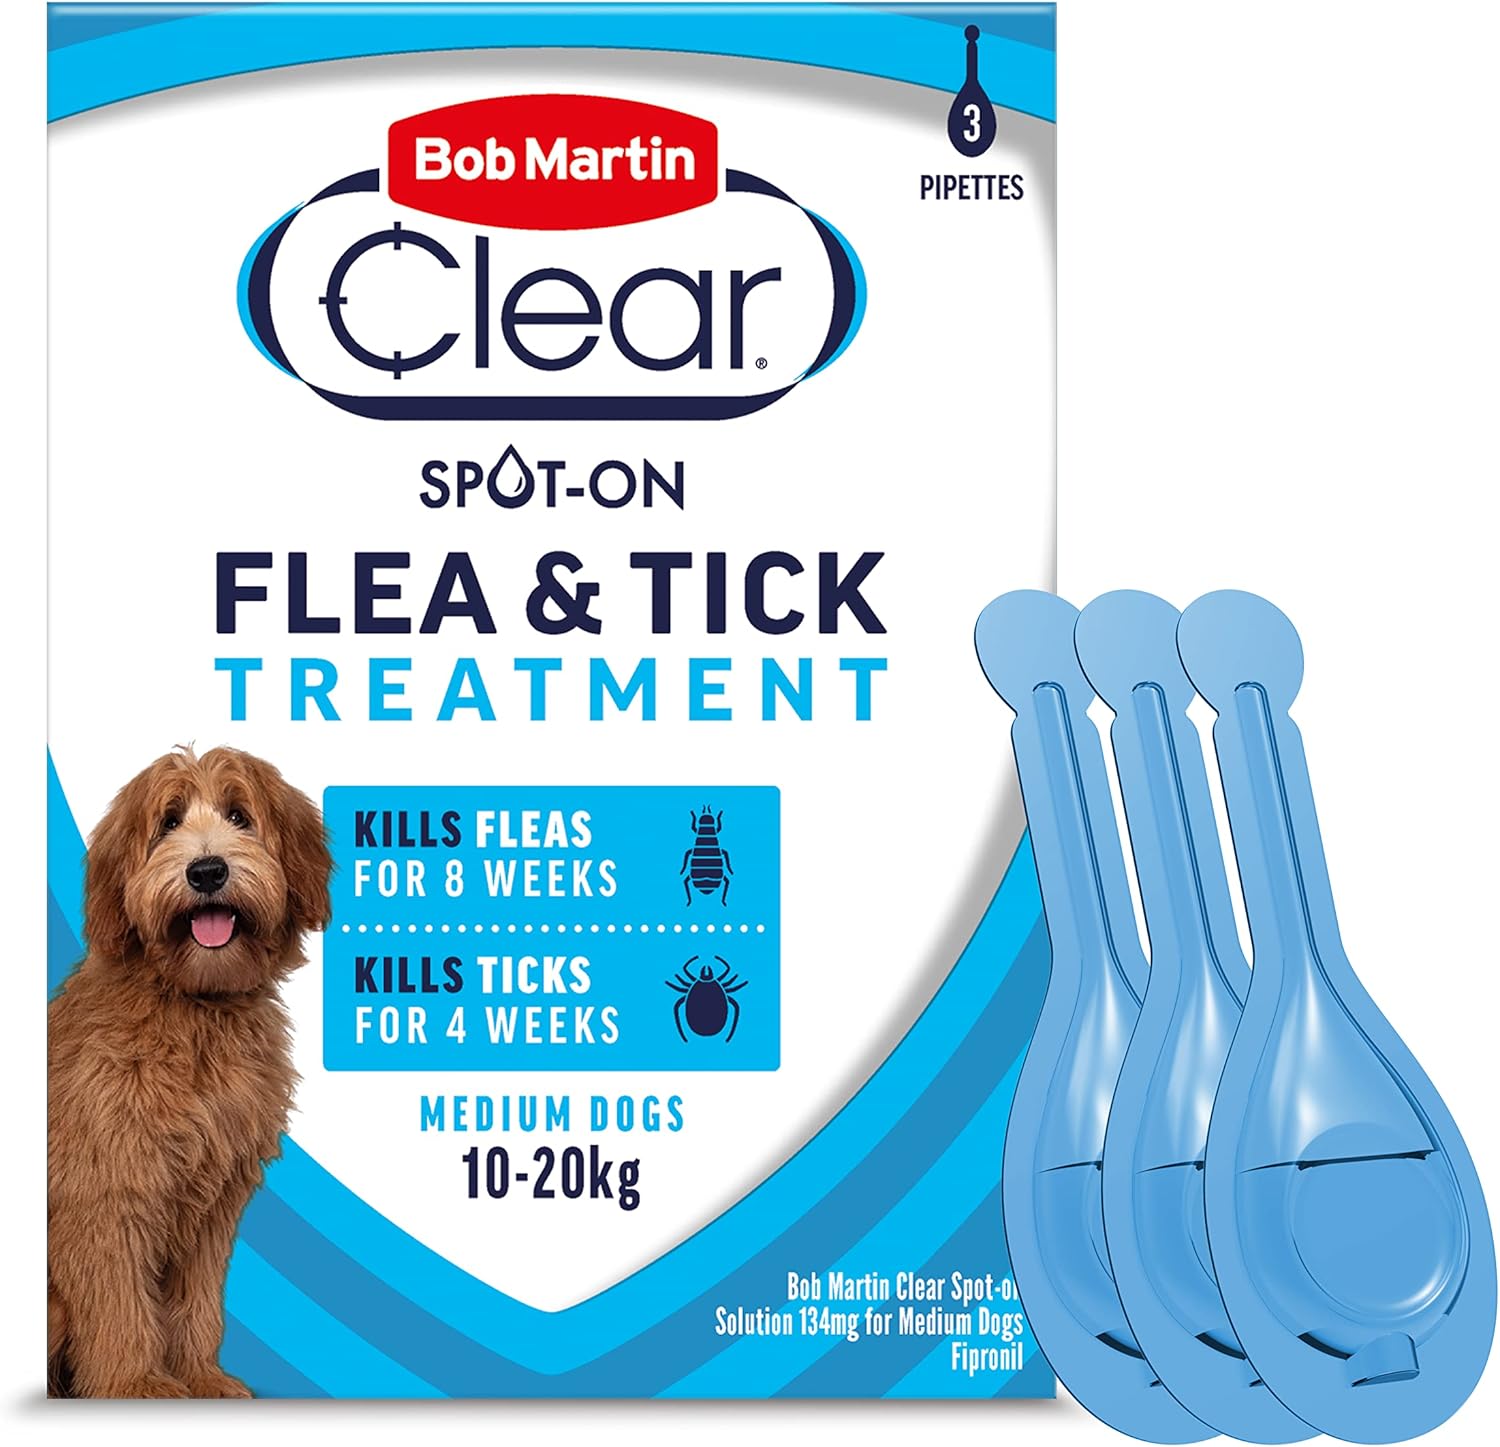 Bob Martin Clear Spot On Flea Treatment for Medium Dogs (10-20kg) - Kills Fleas & Ticks (3 Pipettes)?K0823